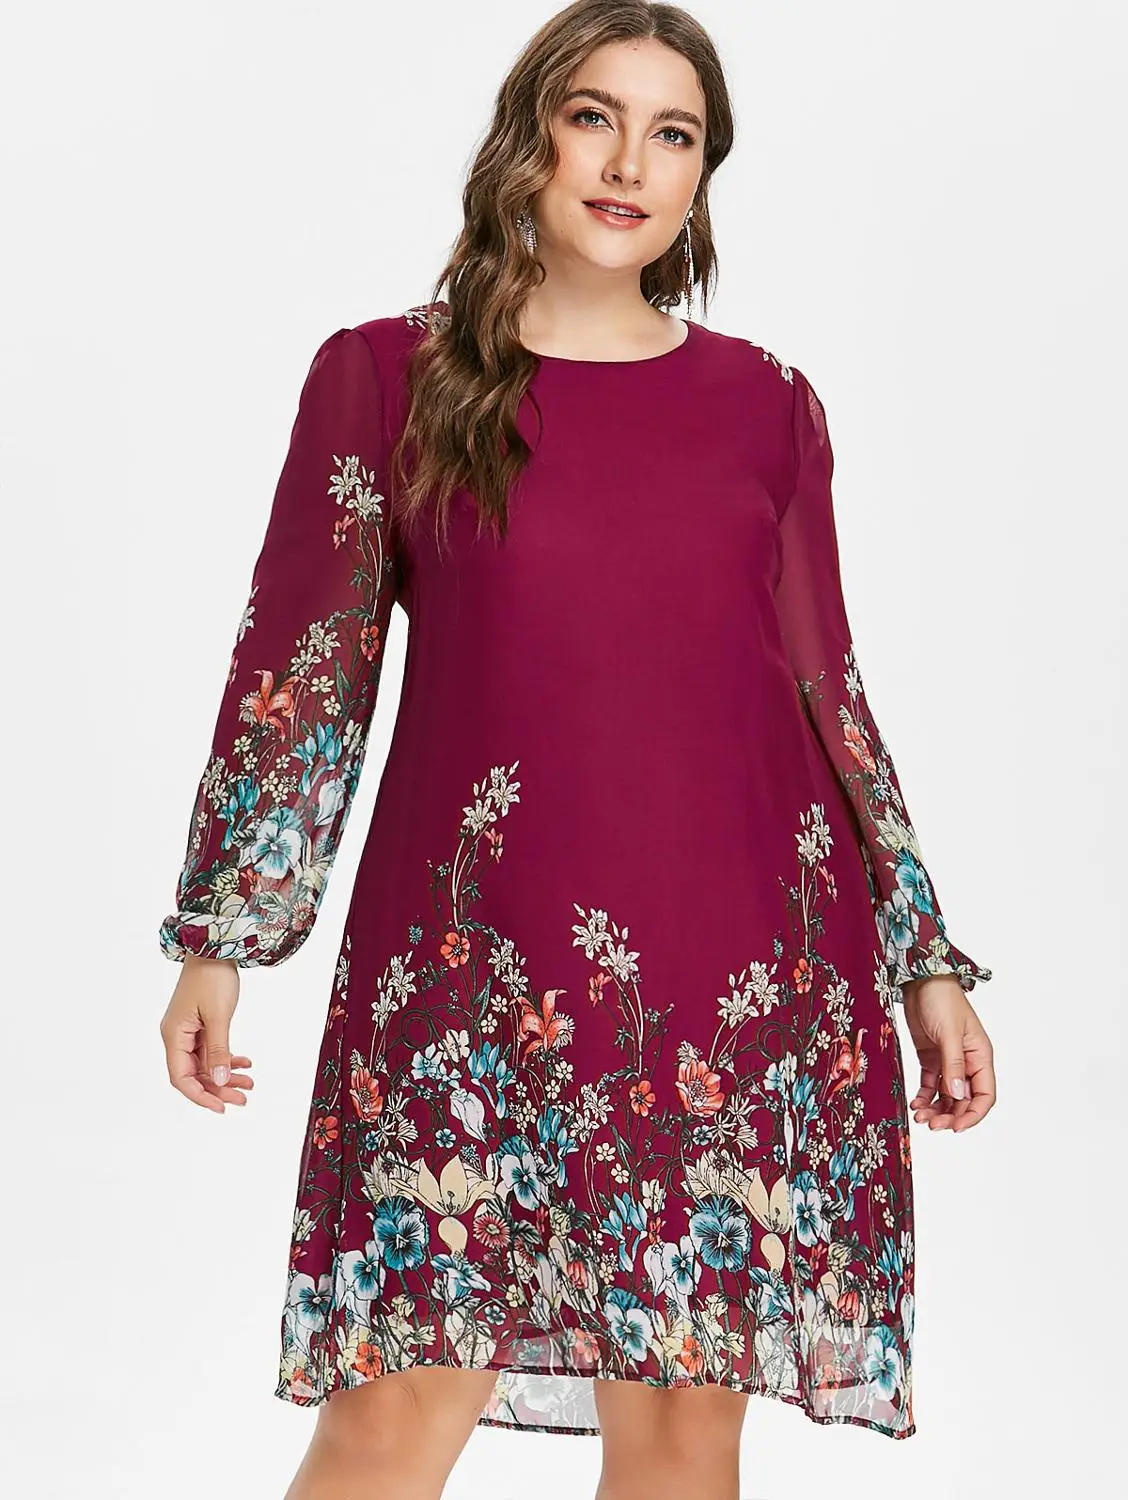 Wipalo Элегантное шифоновое платье с цветочным принтом размера плюс и длинным рукавом 5XL осень - Цвет: Wine Red C